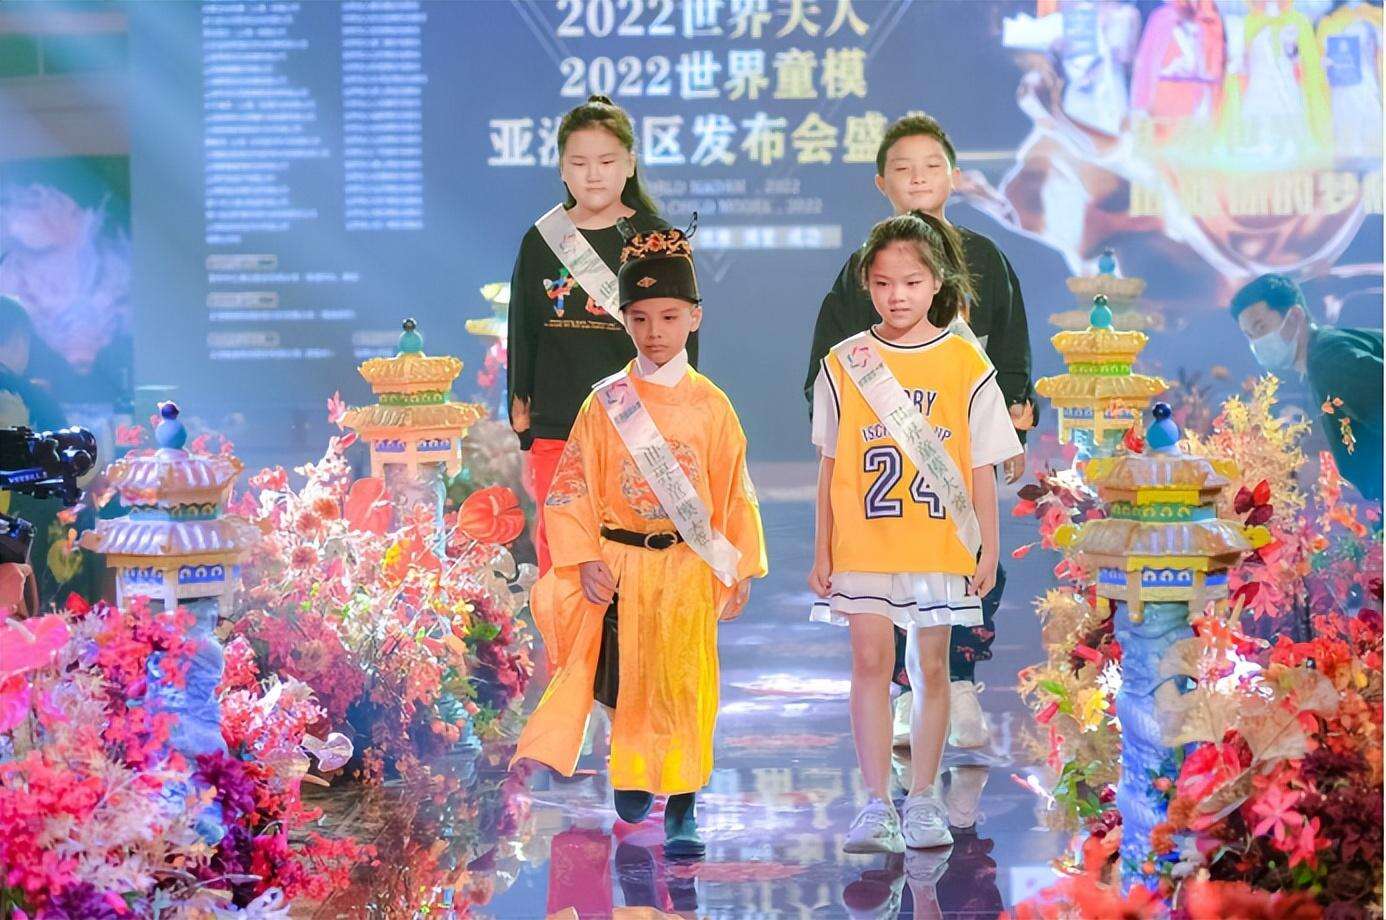 2022世界夫人暨世界童模亚洲赛区启动仪式在上海隆重举行